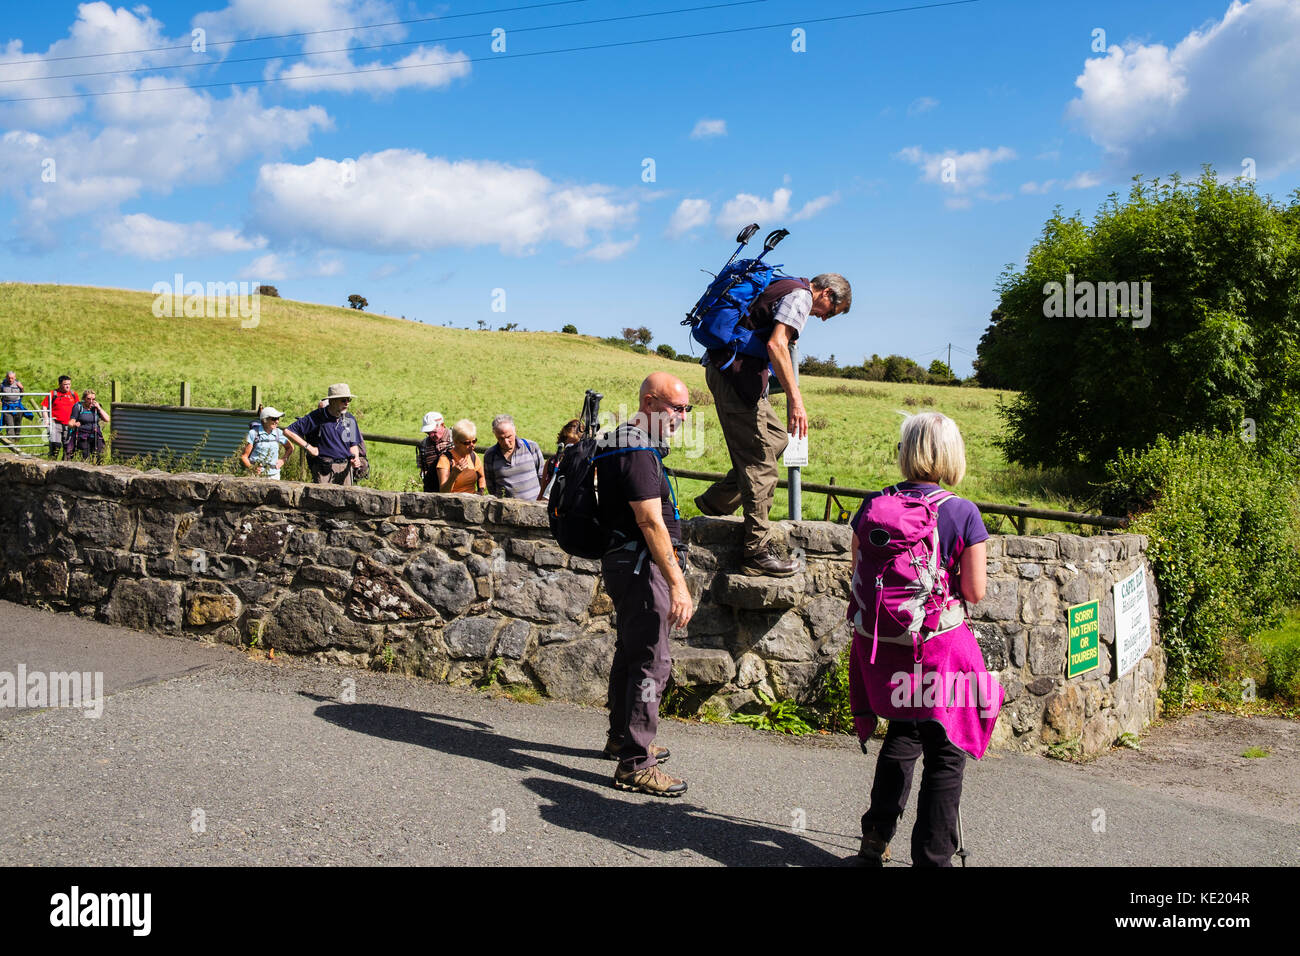 Randonneurs grimpant sur un mur de pierre stile sur un pays de marche. Lligwy, Isle of Anglesey, au nord du Pays de Galles, Royaume-Uni, Angleterre Banque D'Images